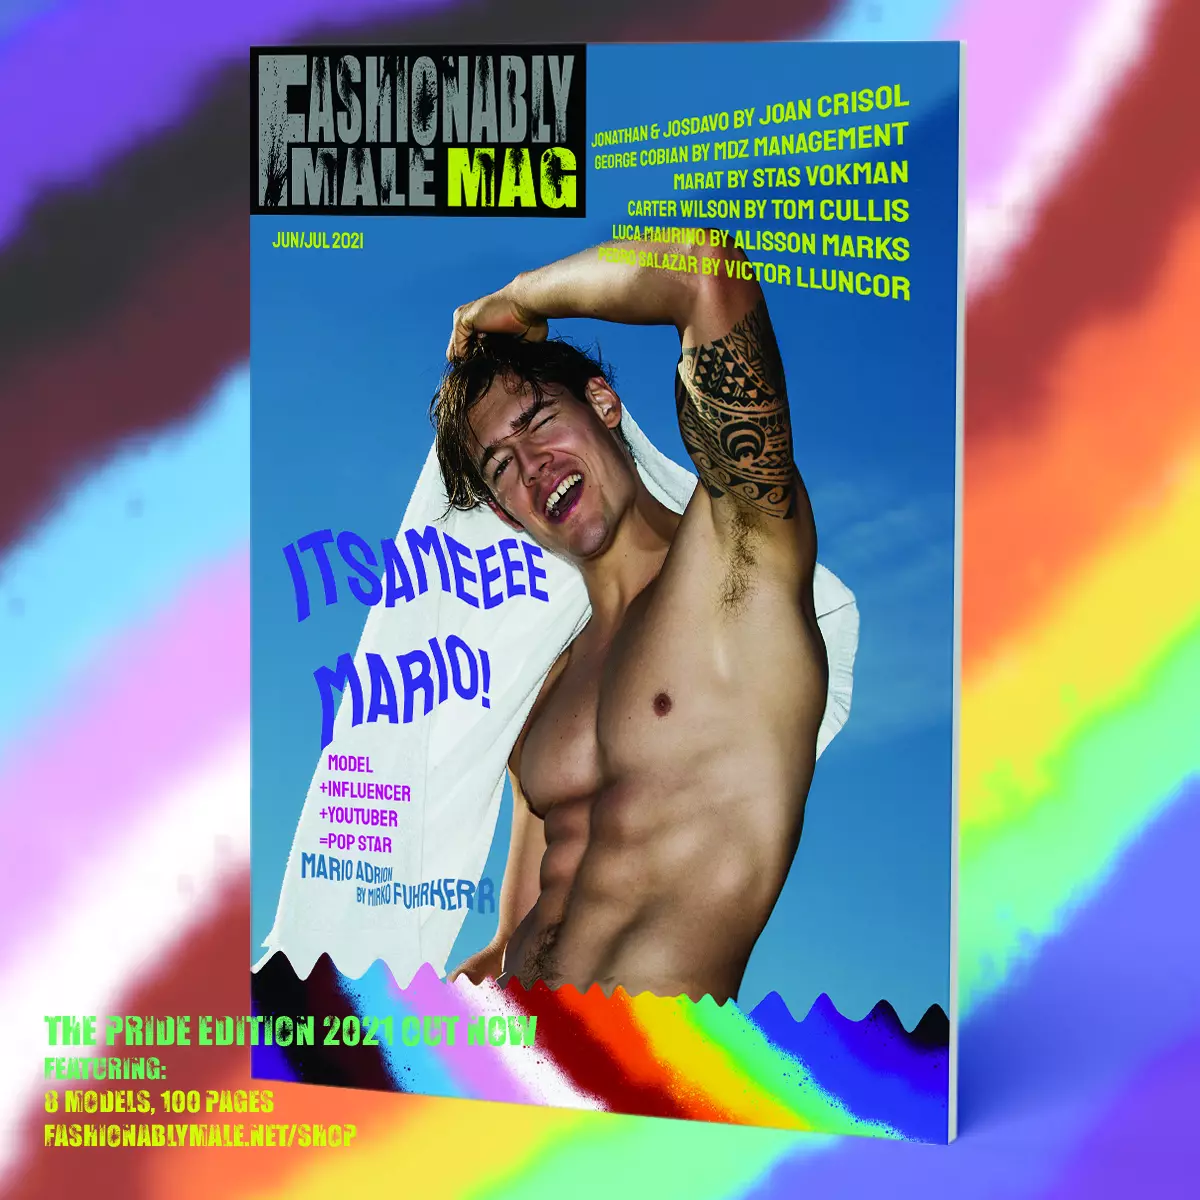 Mario Adrion alang sa Fashionably Male Mag Pride Edition 2021 cover nga produkto